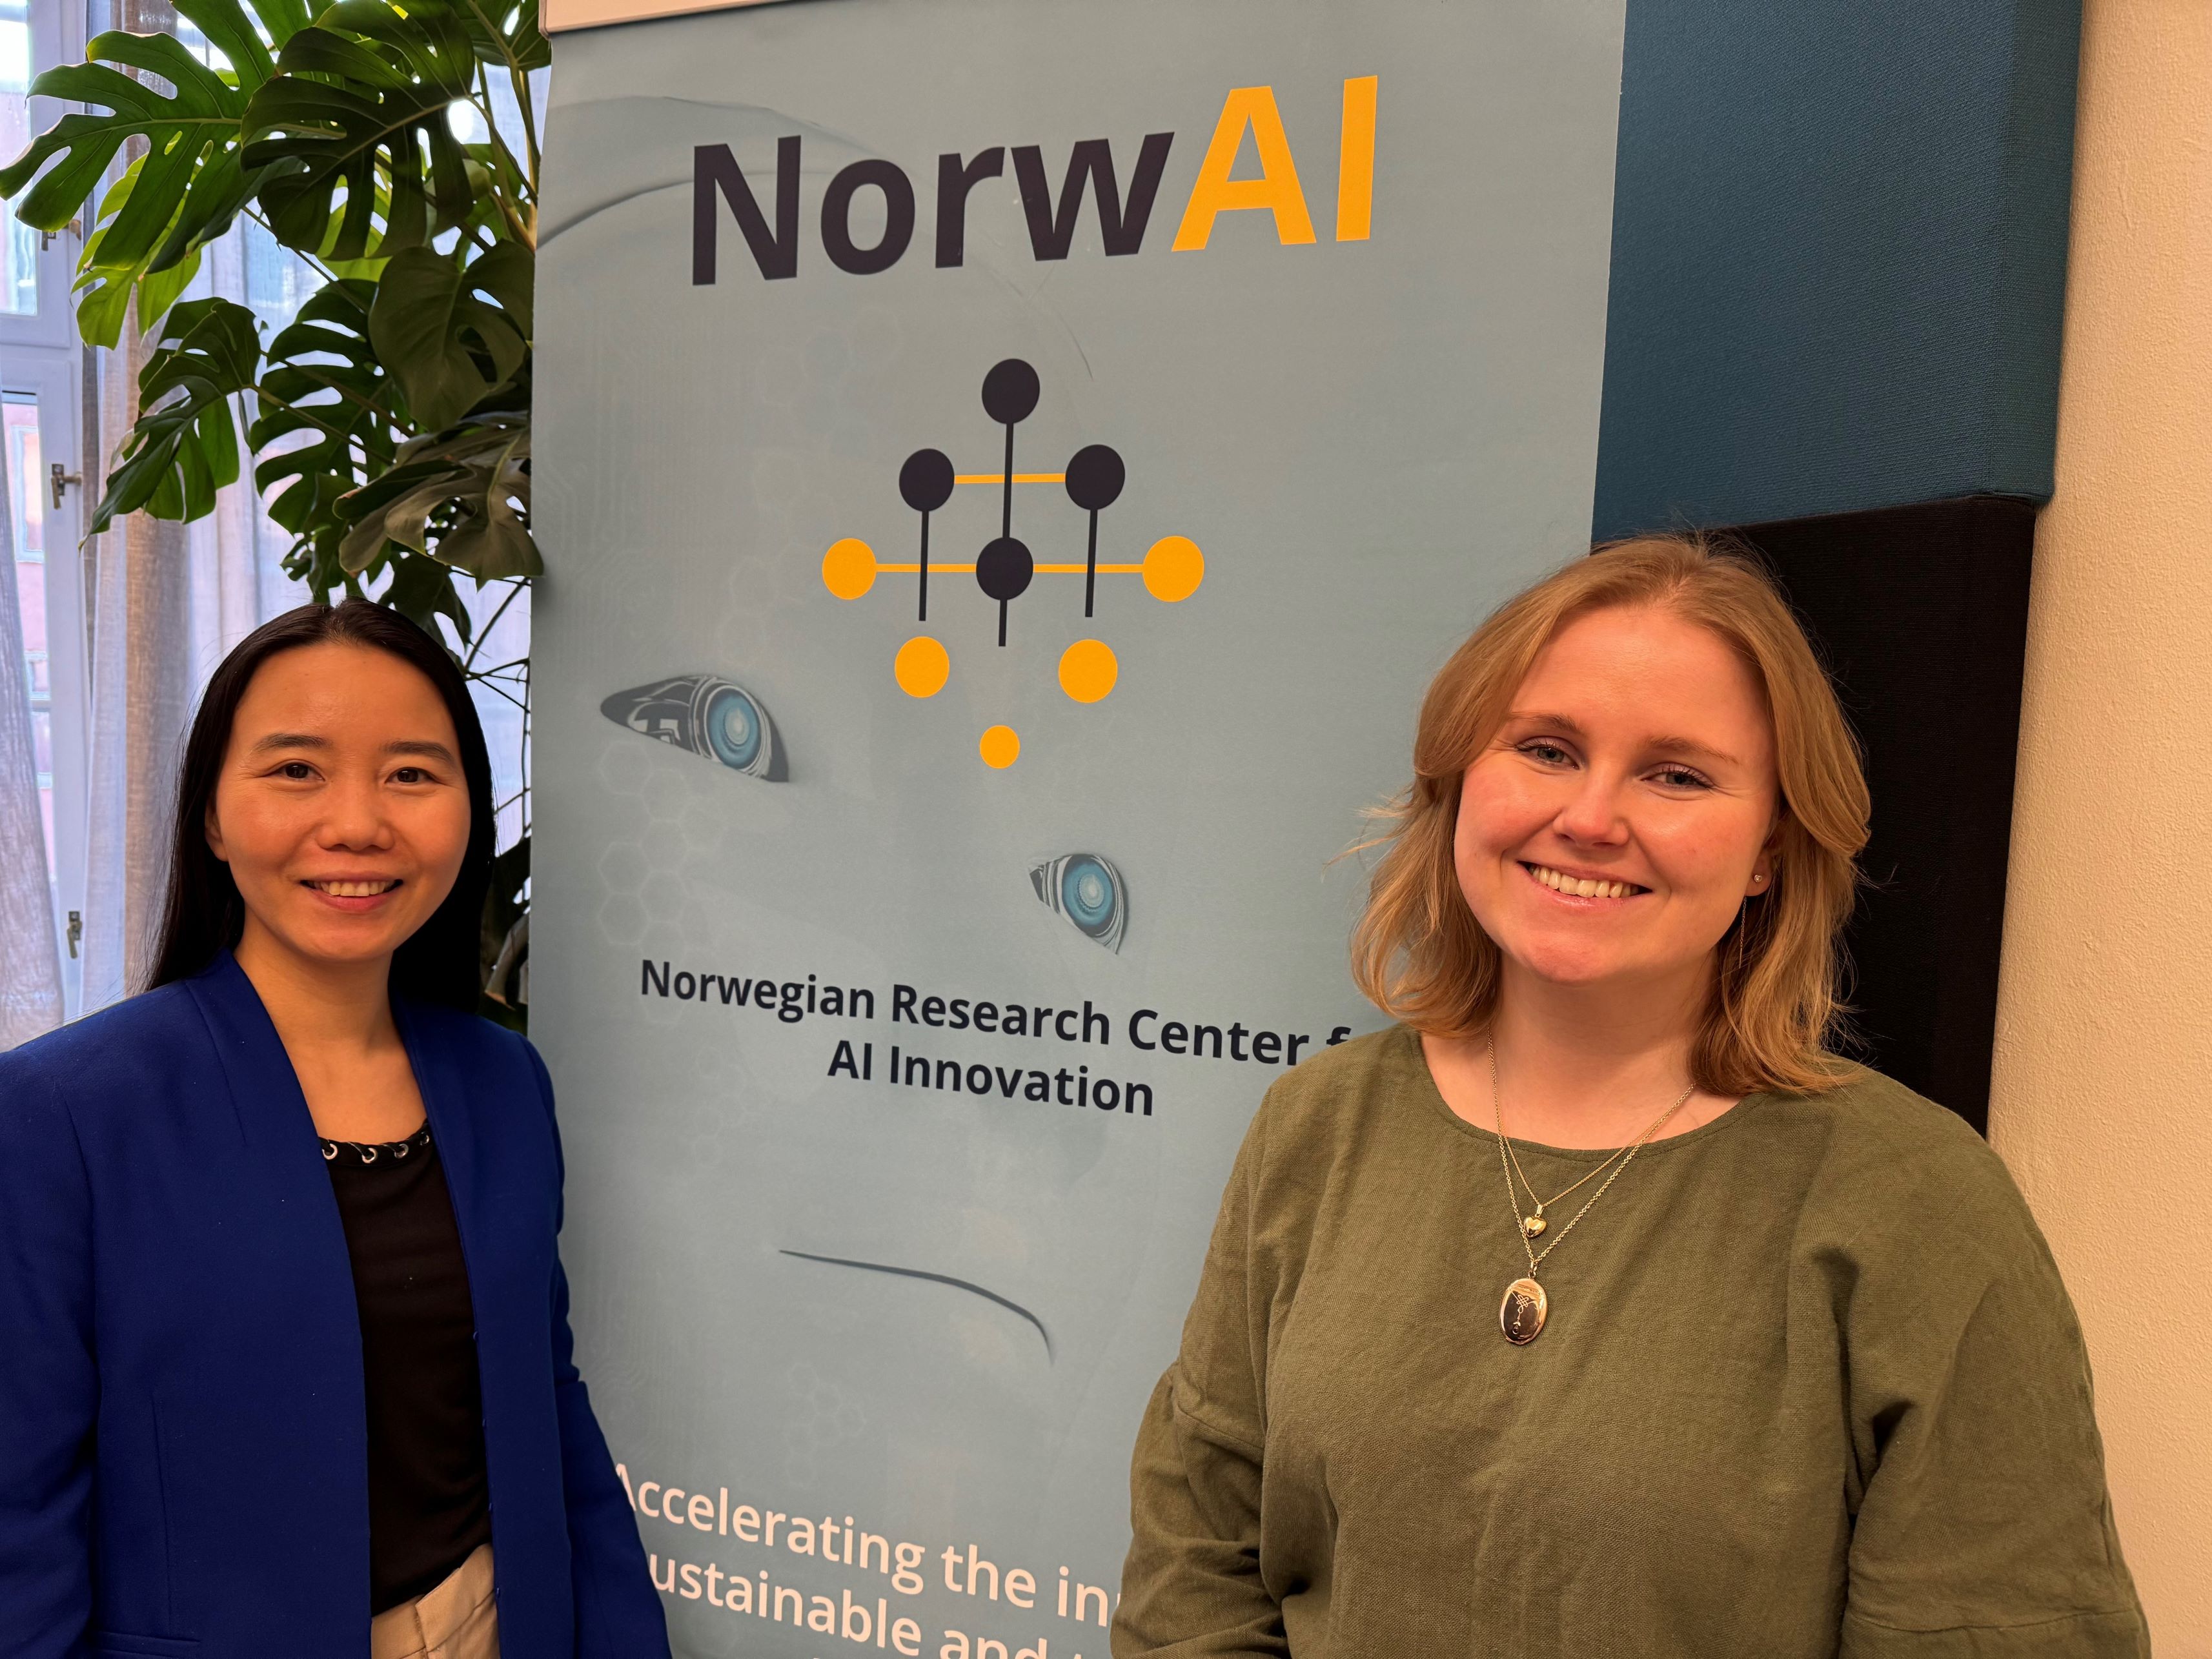 Nhien Nguyen and Ingrid Berg Sivertsen during visit at NorwAI